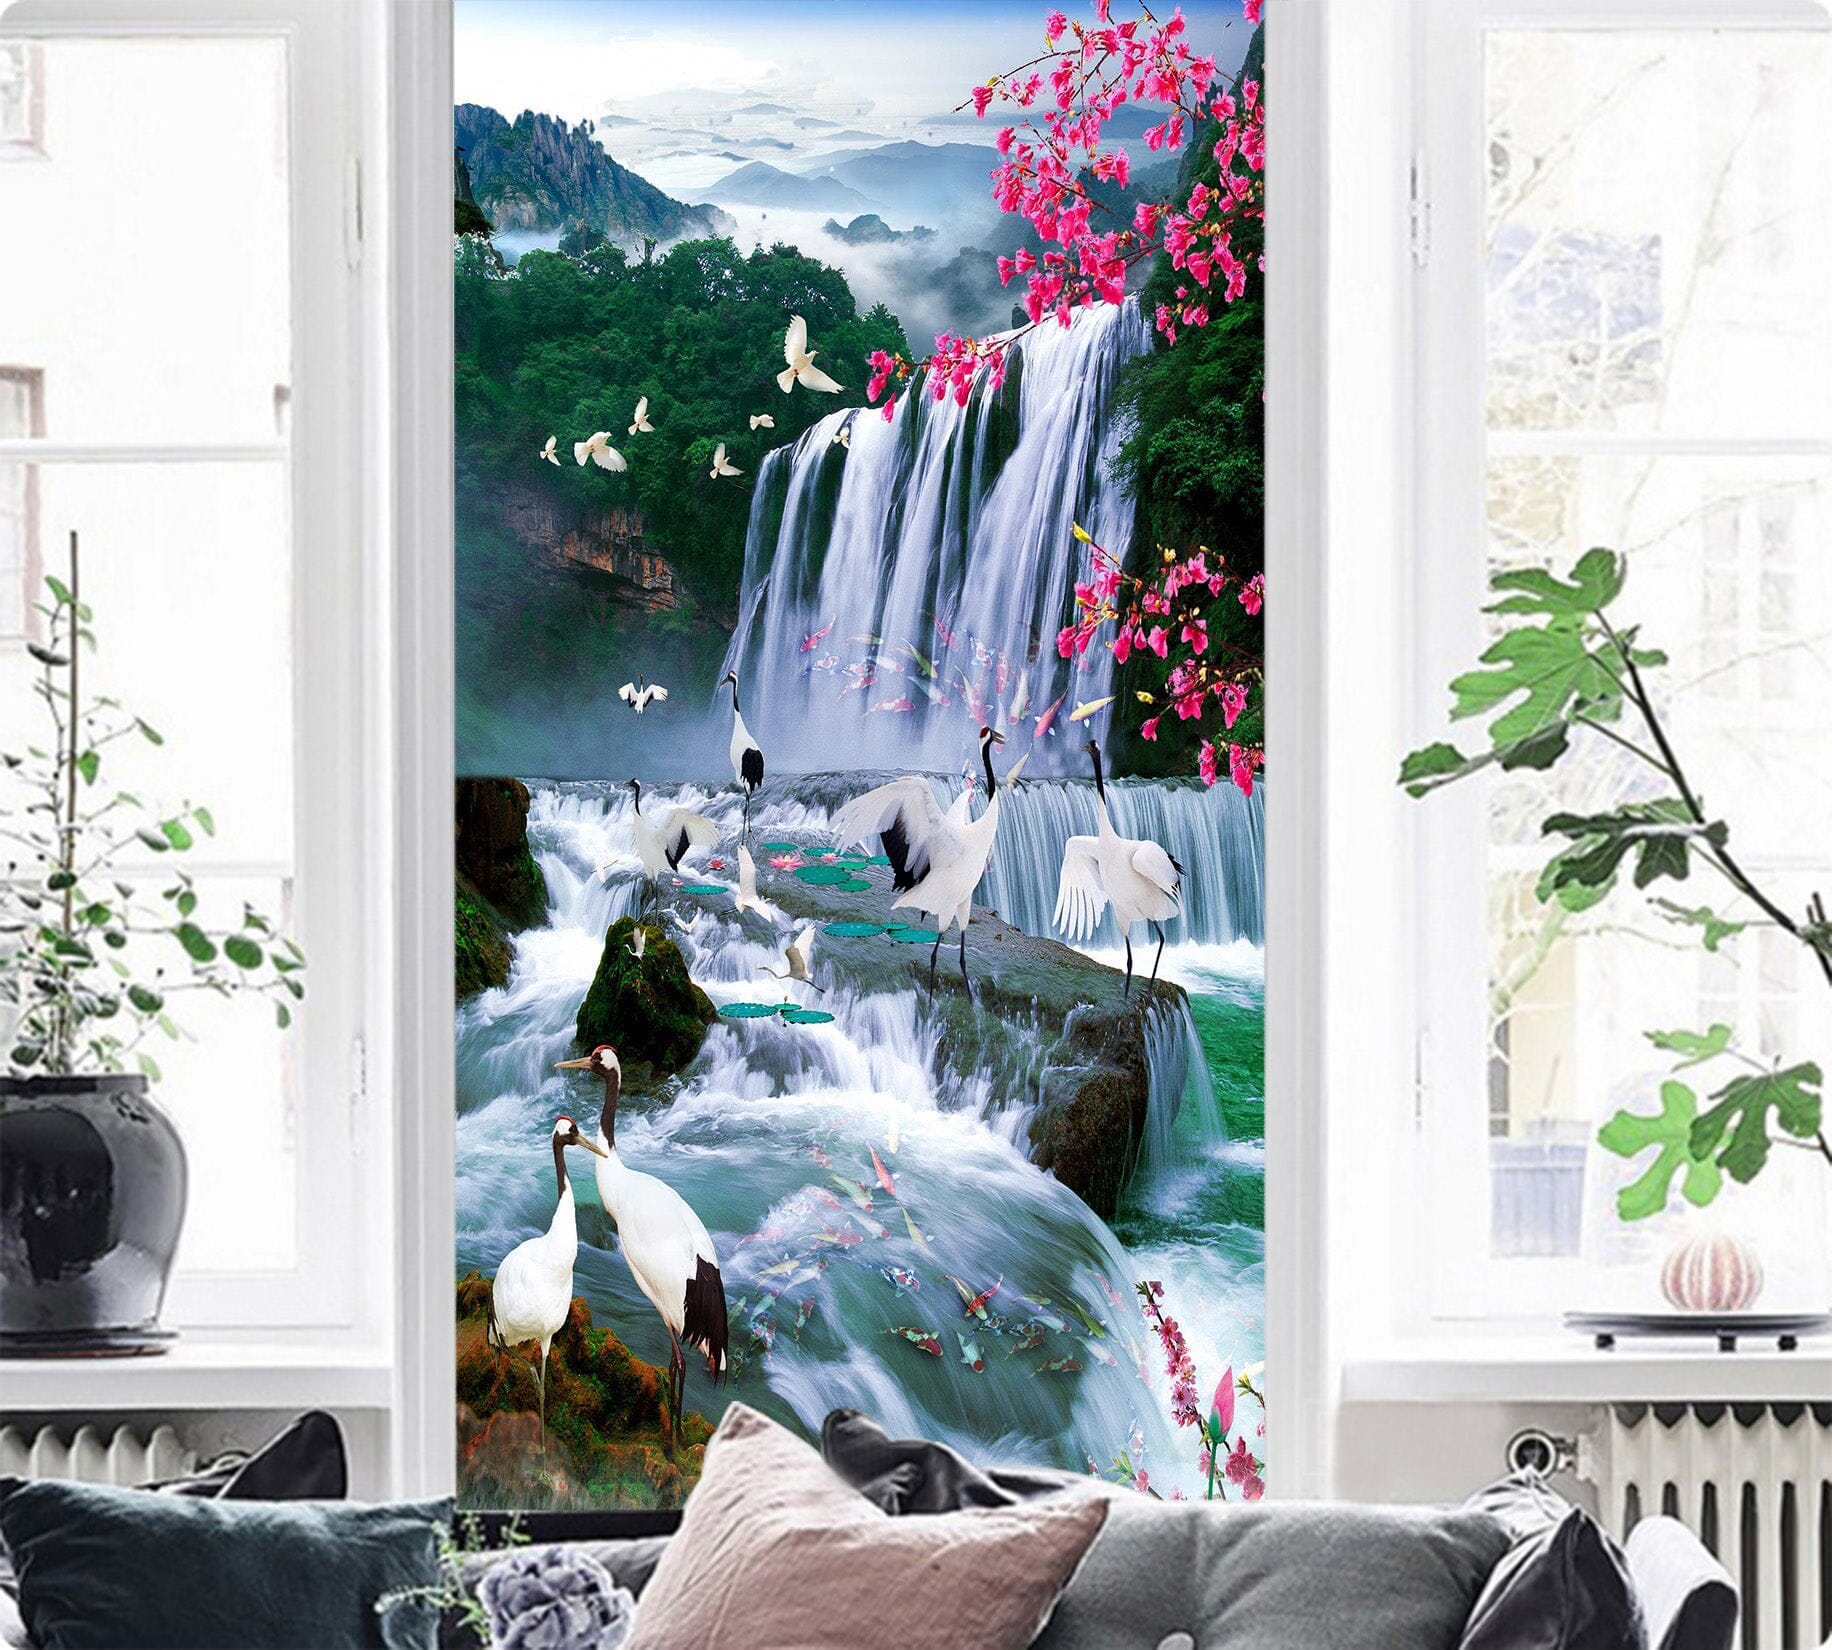 3D Mountain Waterfall 1532 Wall Murals Wallpaper AJ Wallpaper 2 